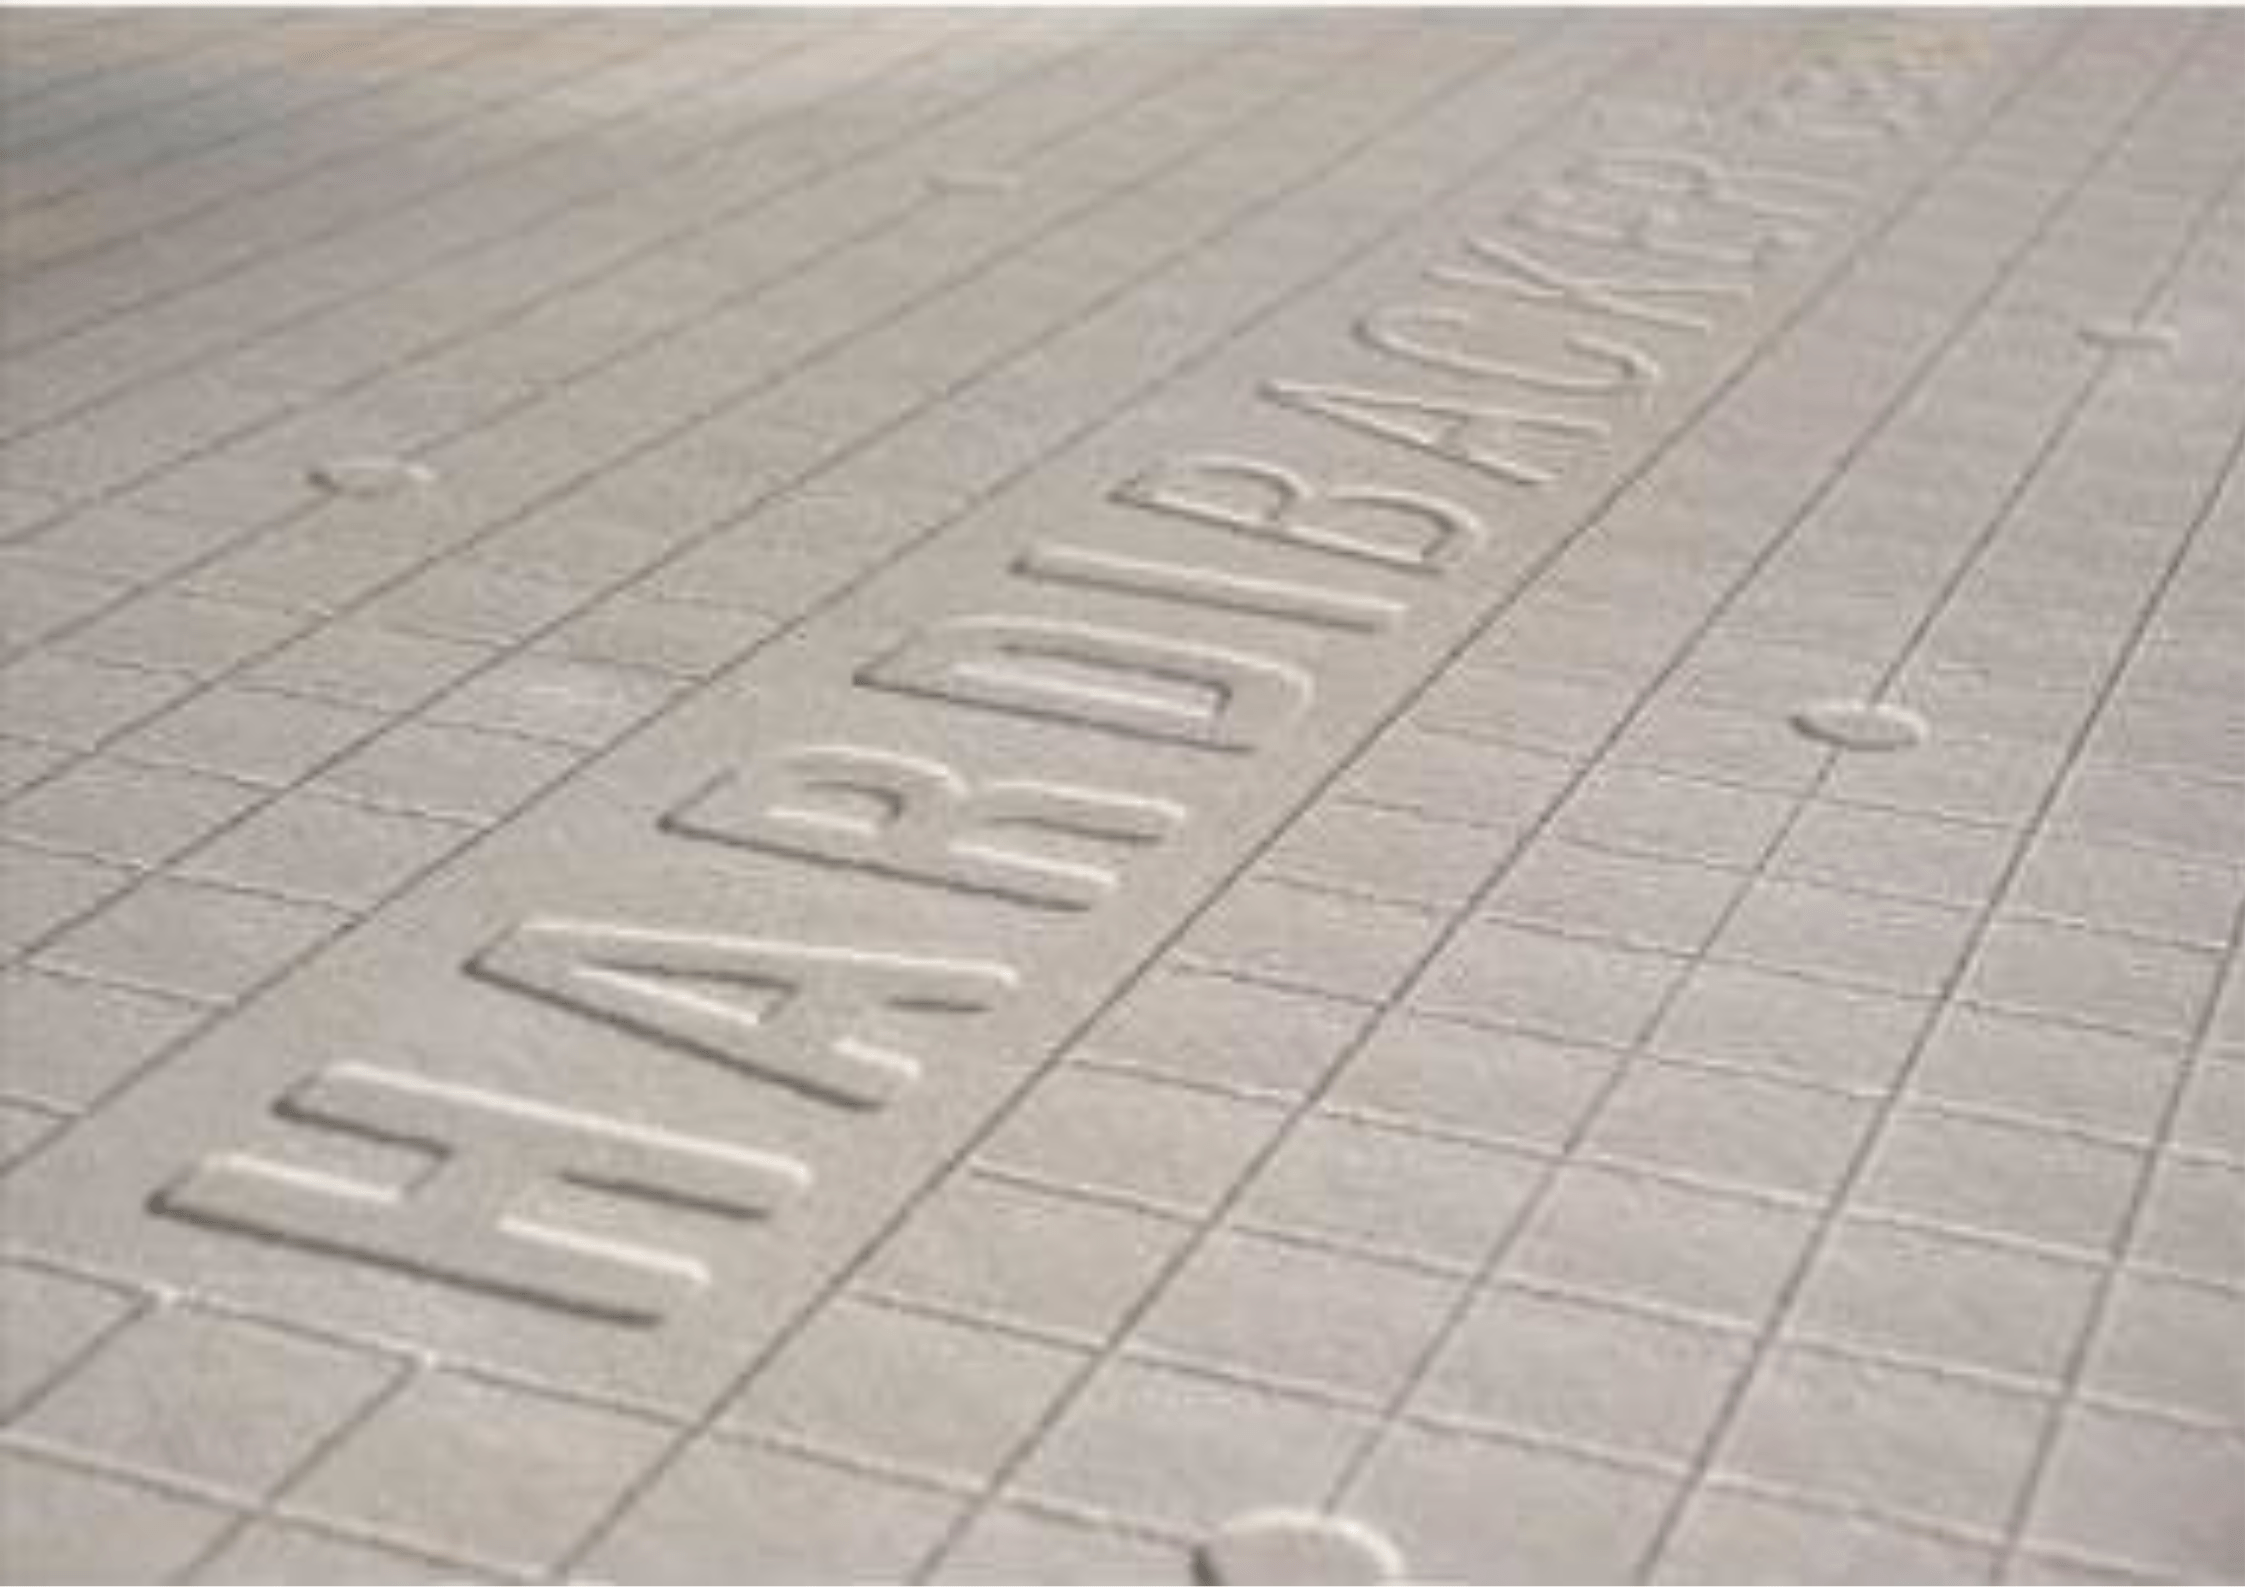 James Hardie Hardiebacker 12mm Tile Backer board 12mm x 1200mm x 800mm IUK01635 | insulationuk.co.uk